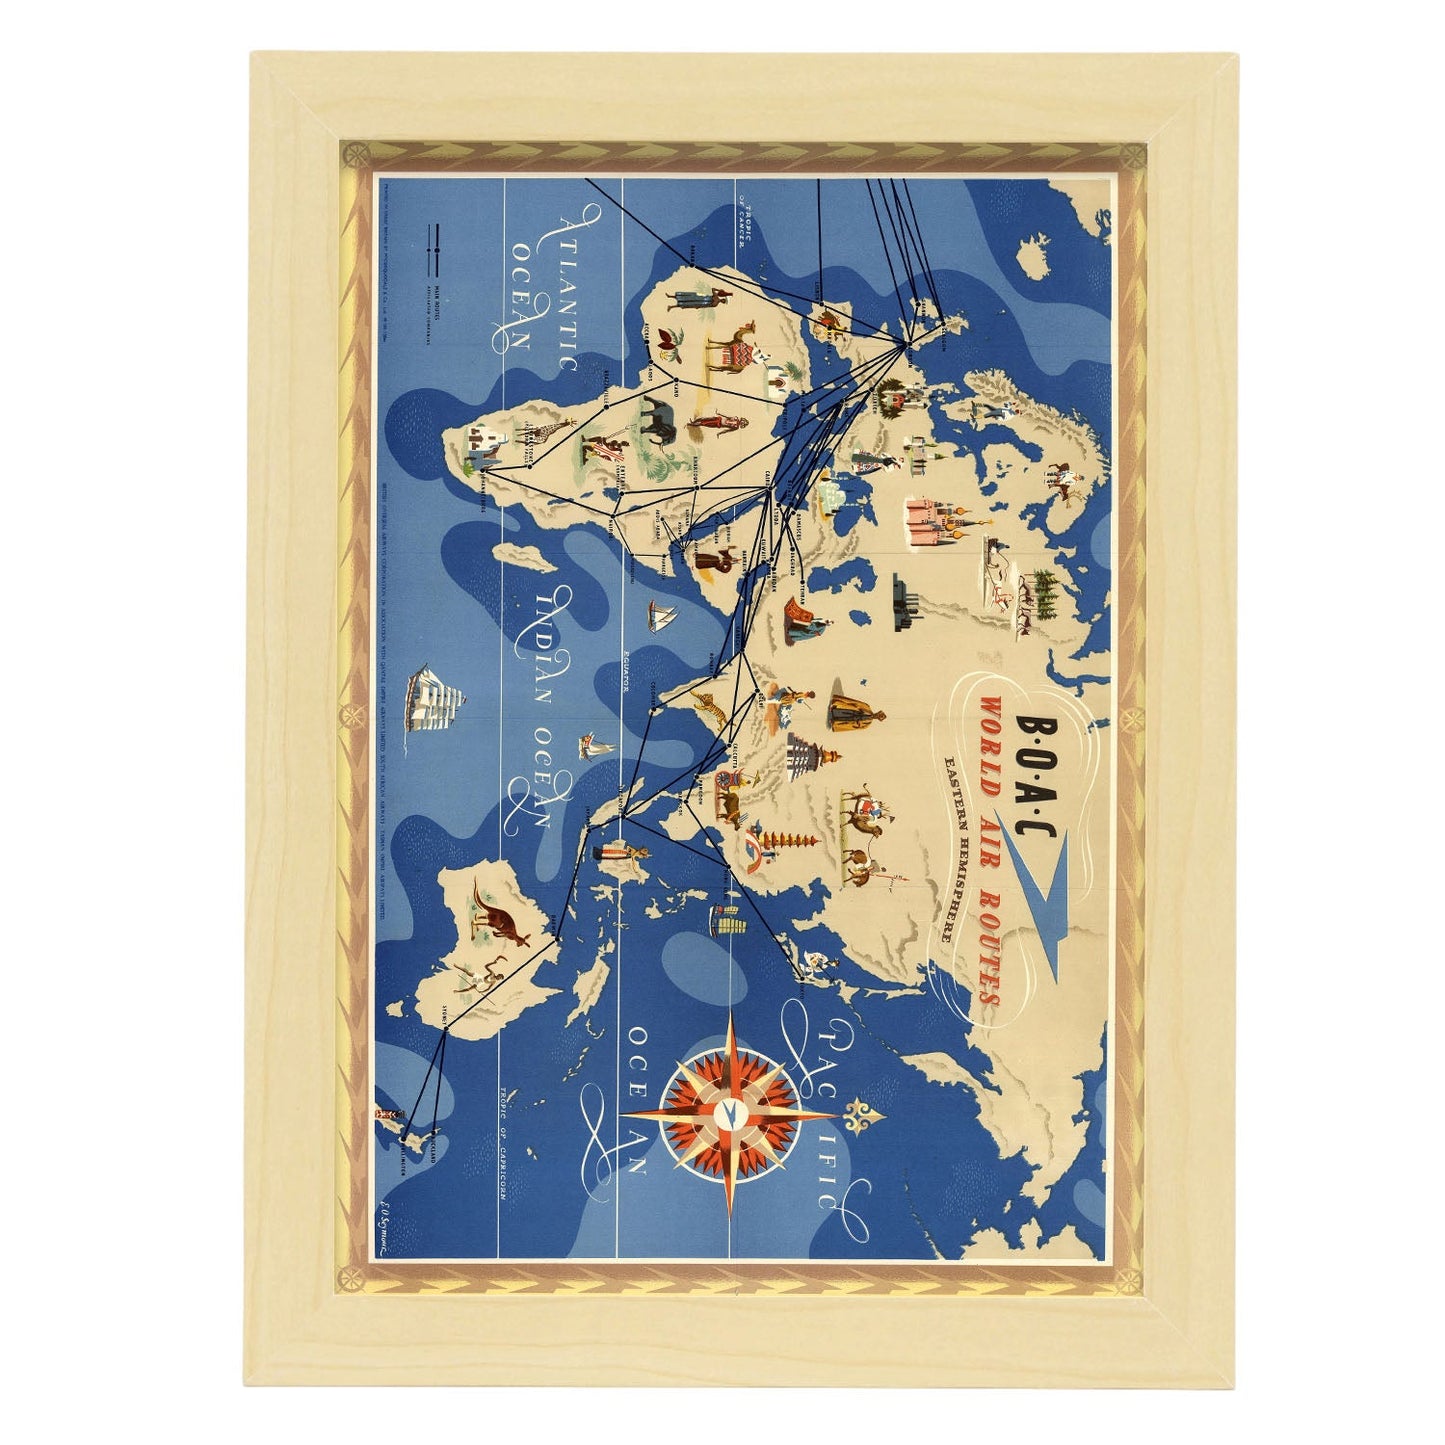 BOAC-World-route-map-Eastern-Hemisphere-Artwork-Nacnic-A4-Marco Madera clara-Nacnic Estudio SL